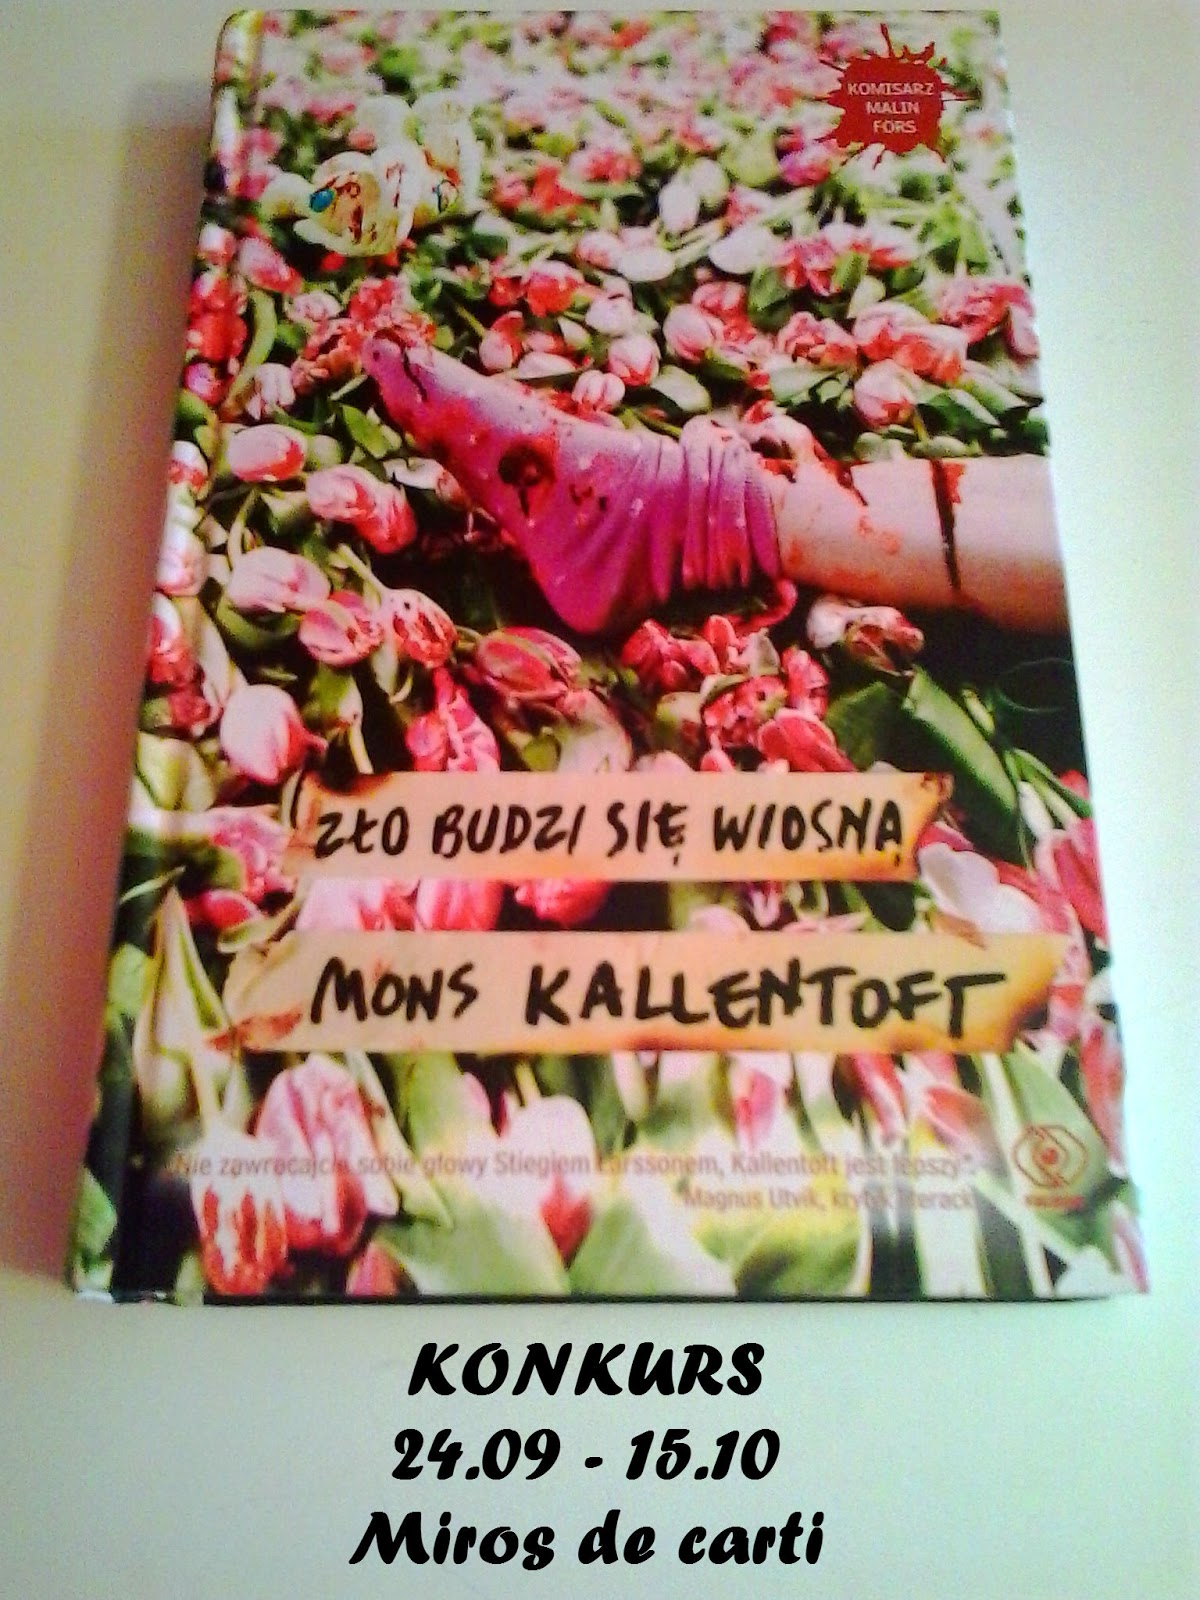 KONKURS Mons Kallentoft "Zło budzi się wiosną"